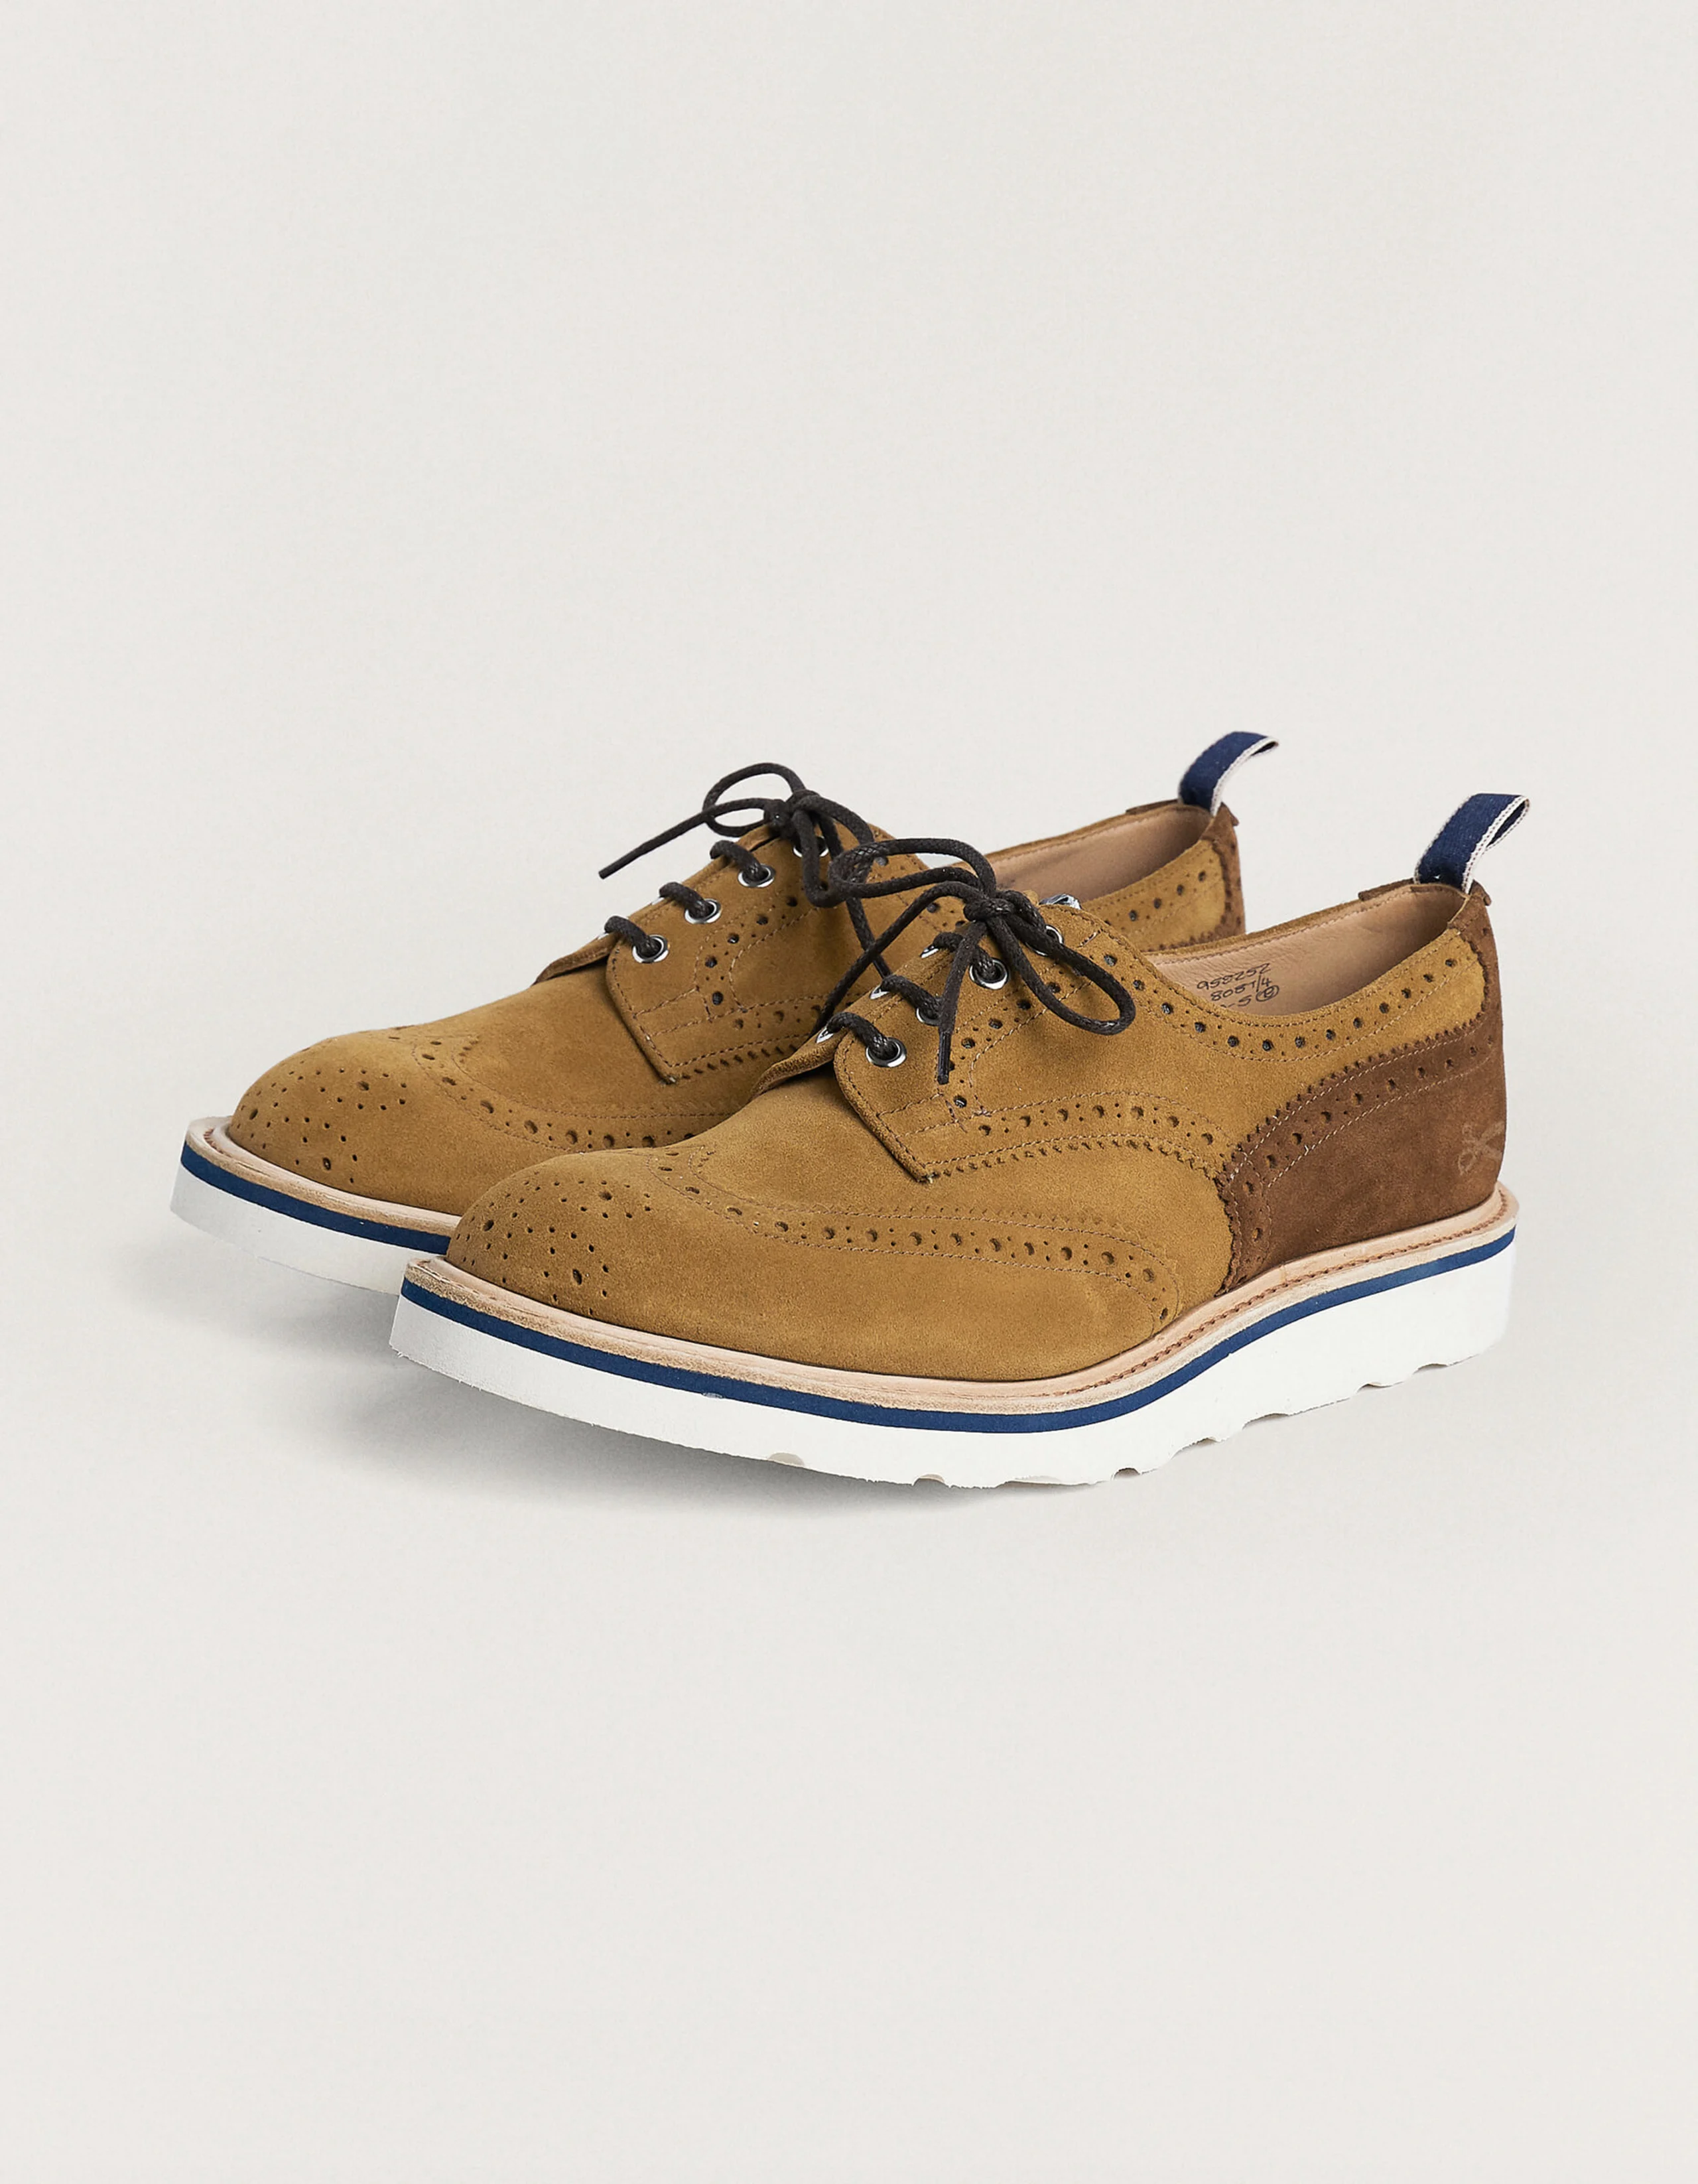 DENHAM x Tricker's Bourton brogue shoe